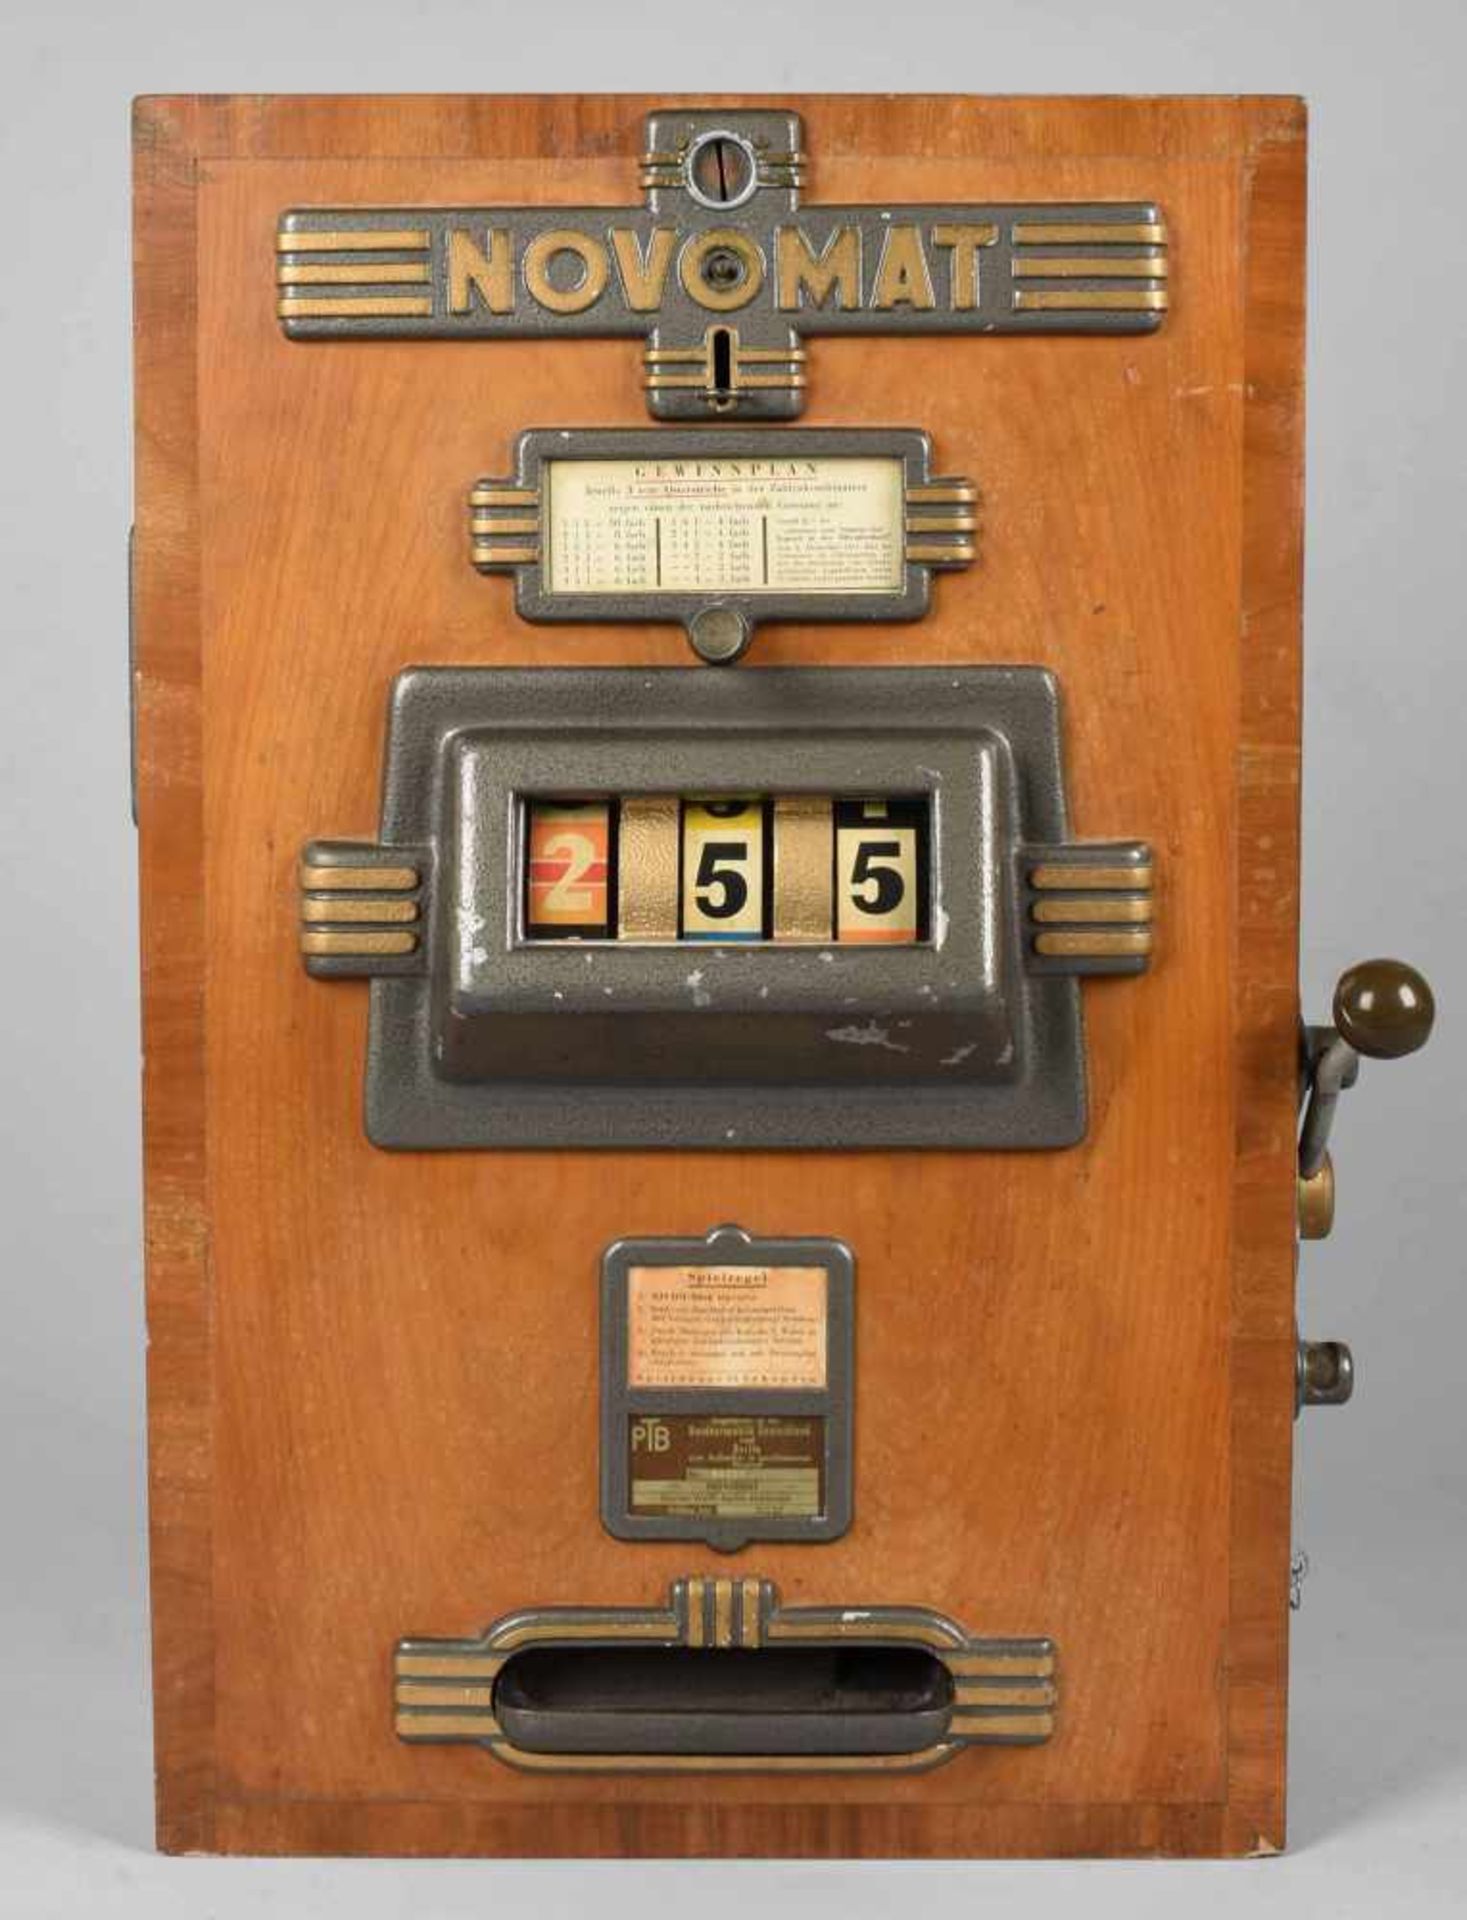 Wandspielautomat "Novomat", Holzgehäuse, mit gegossenen Metallbeschlägen, seitlich Hebel zum - Bild 2 aus 2